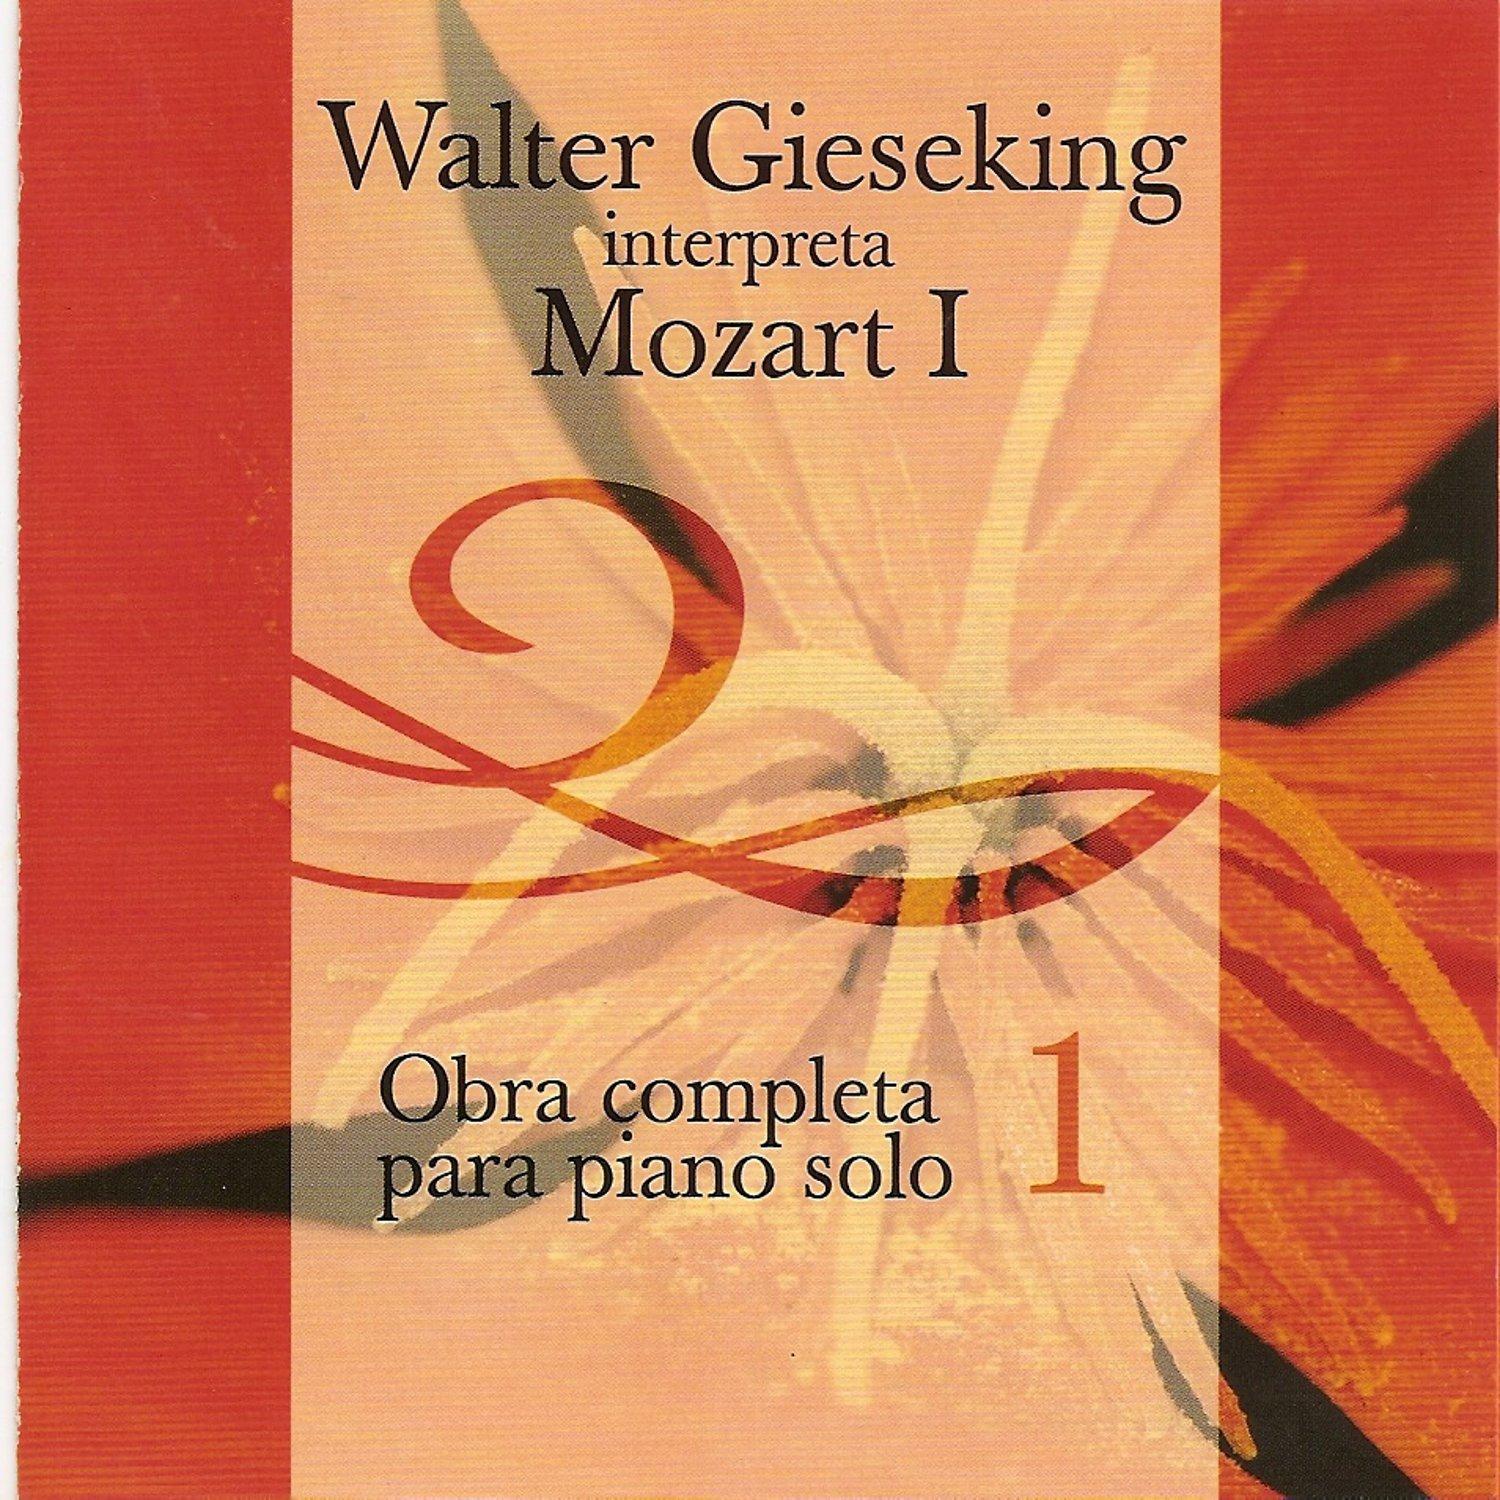 Walter Gieseking Interpreta a Mozart 1 - Obra Completa para Piano Vol. 2